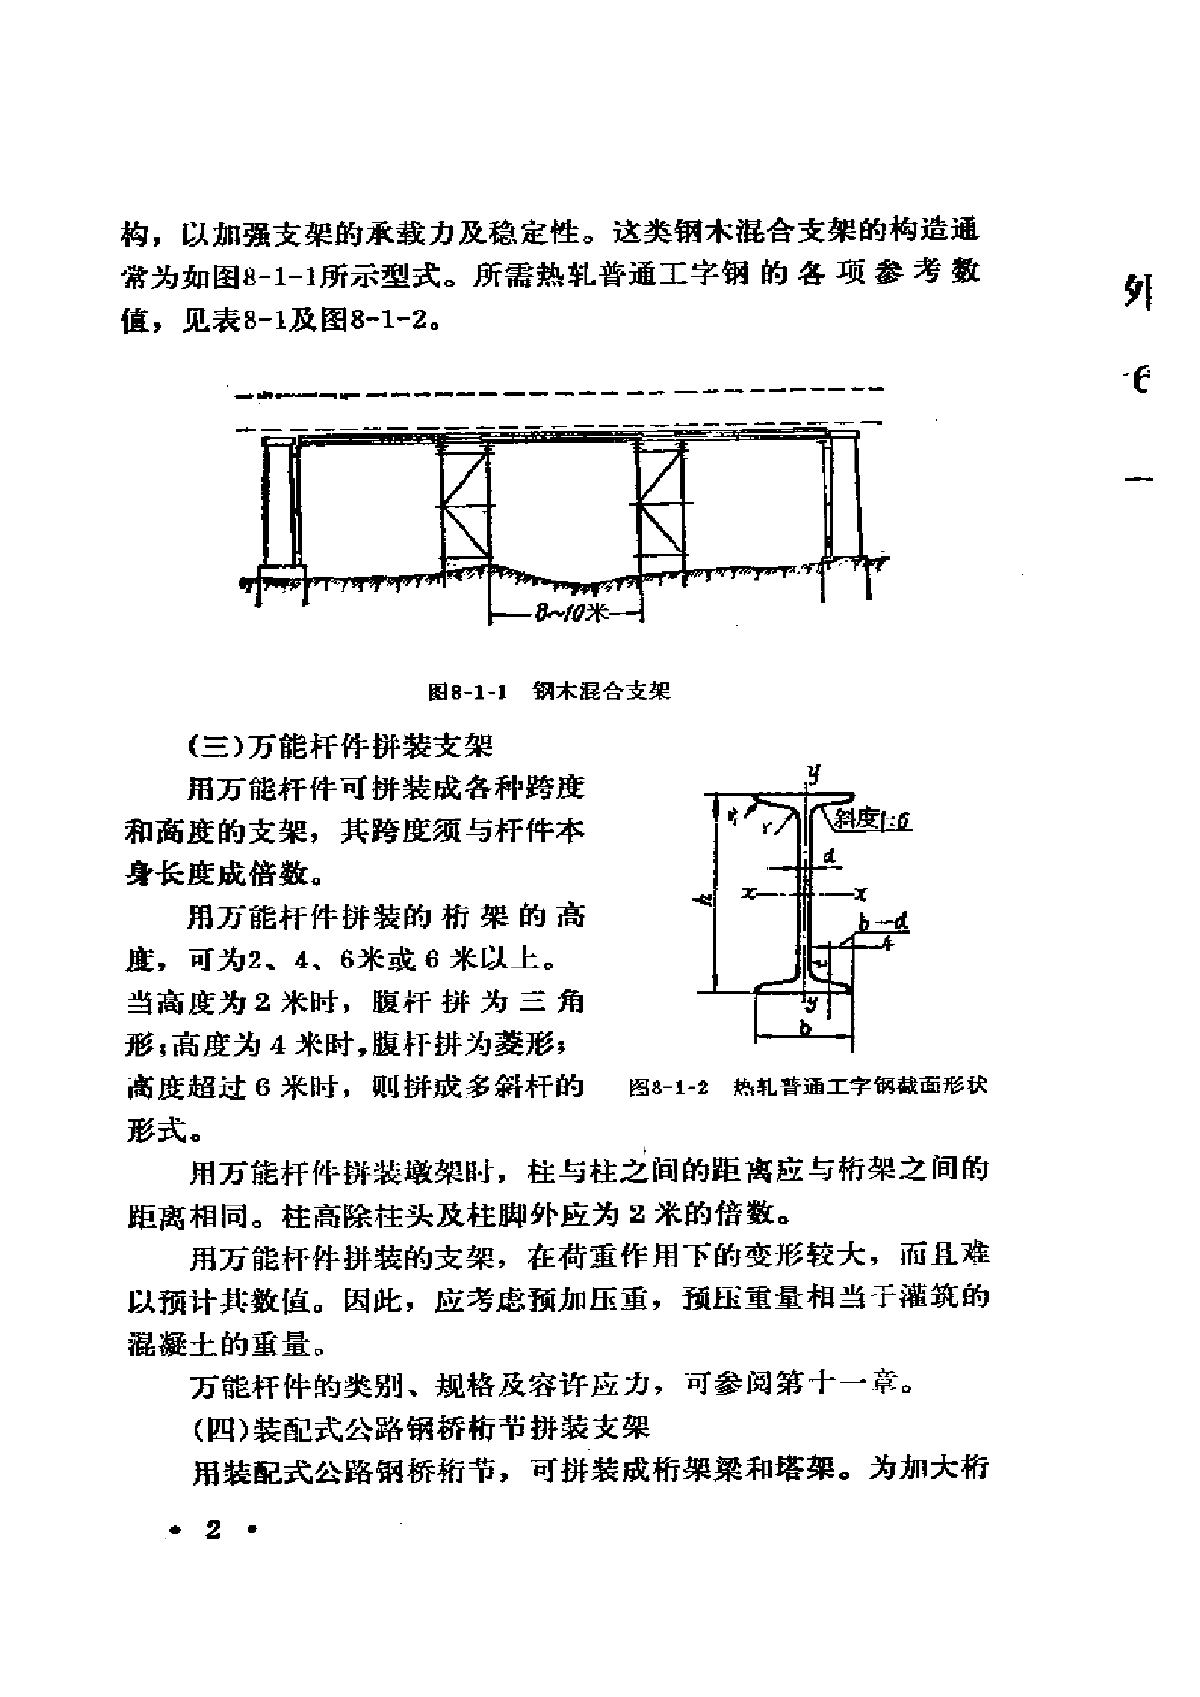 公路施工手册-桥涵(下册)-图二